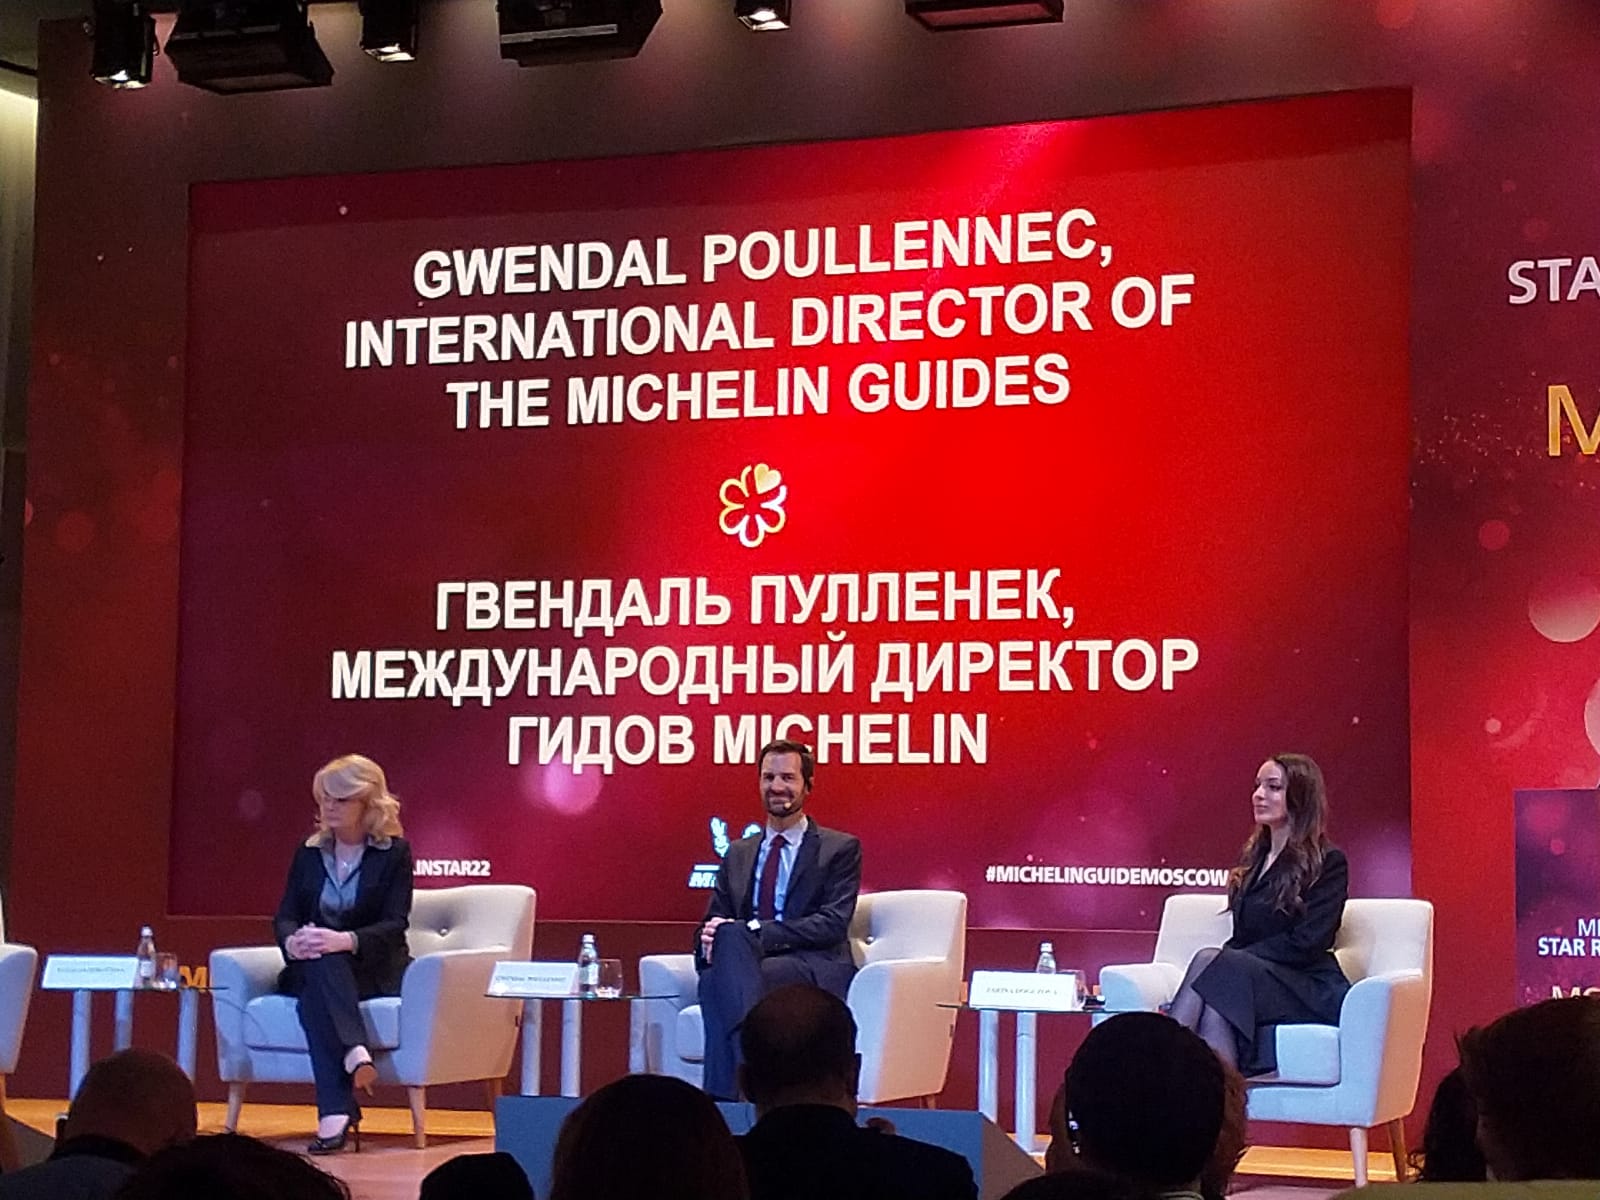 Ростуризм: гид Michelin привлечет в Москву больше обеспеченных туристов